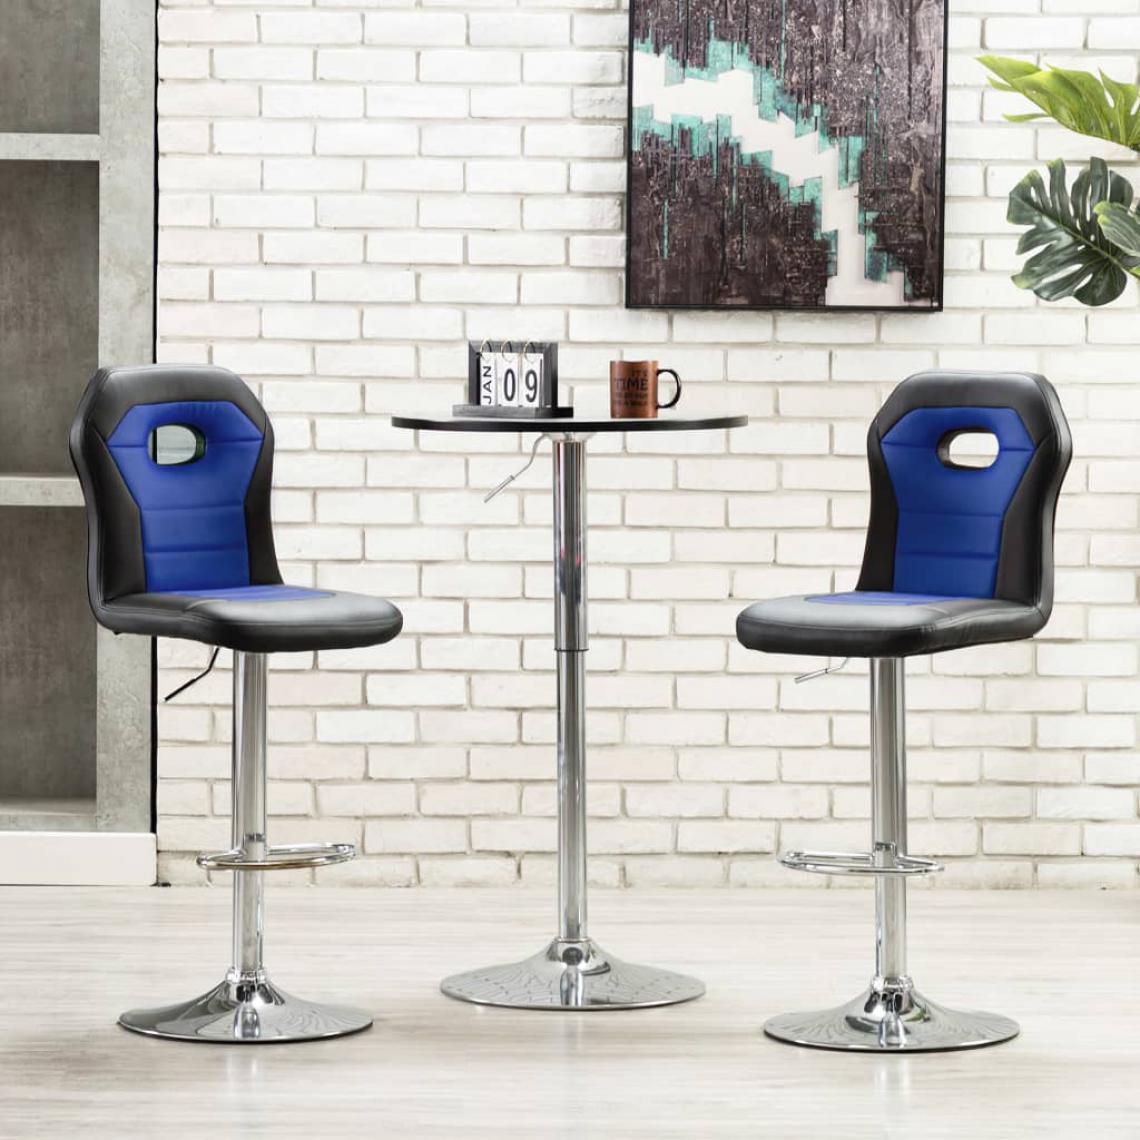 Icaverne - Inedit Fauteuils et chaises gamme Avarua Chaise de bar Bleu Similicuir - Tabourets